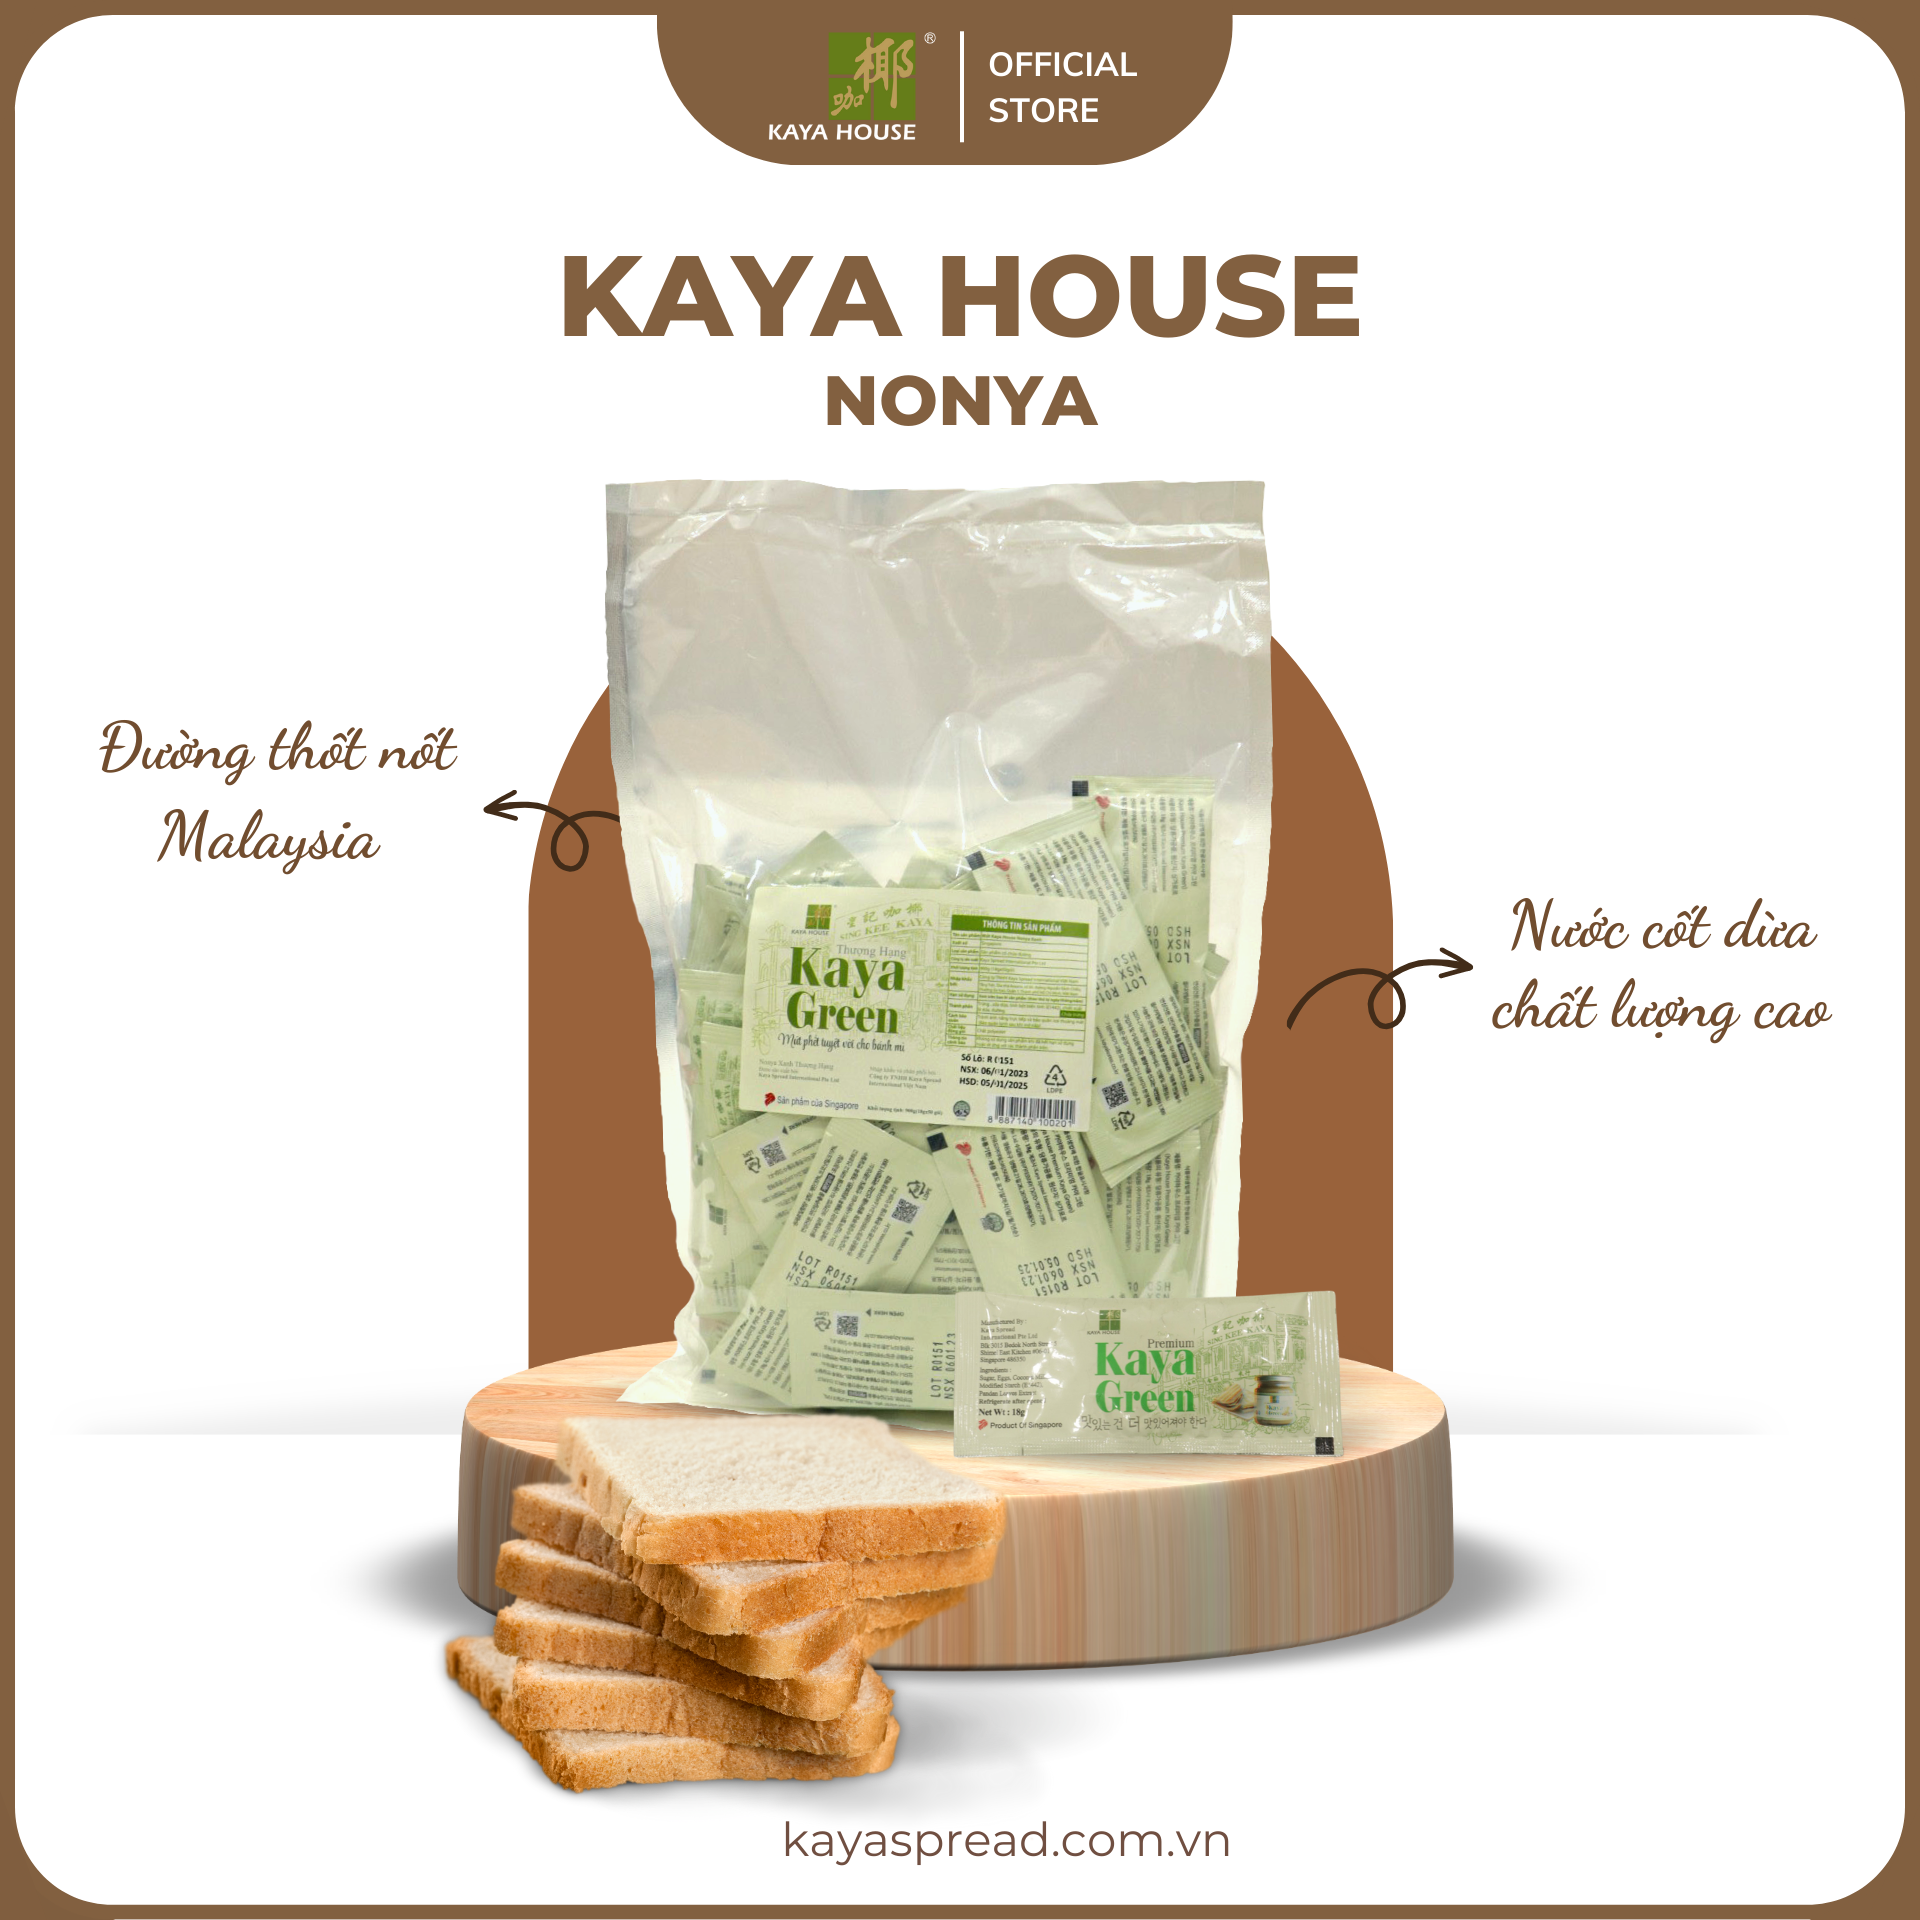 Mứt Kaya Singapore Nonya 900G (50 Túi) - Kaya House - Ăn kèm với Sandwich, làm nguyên liệu nấu ăn